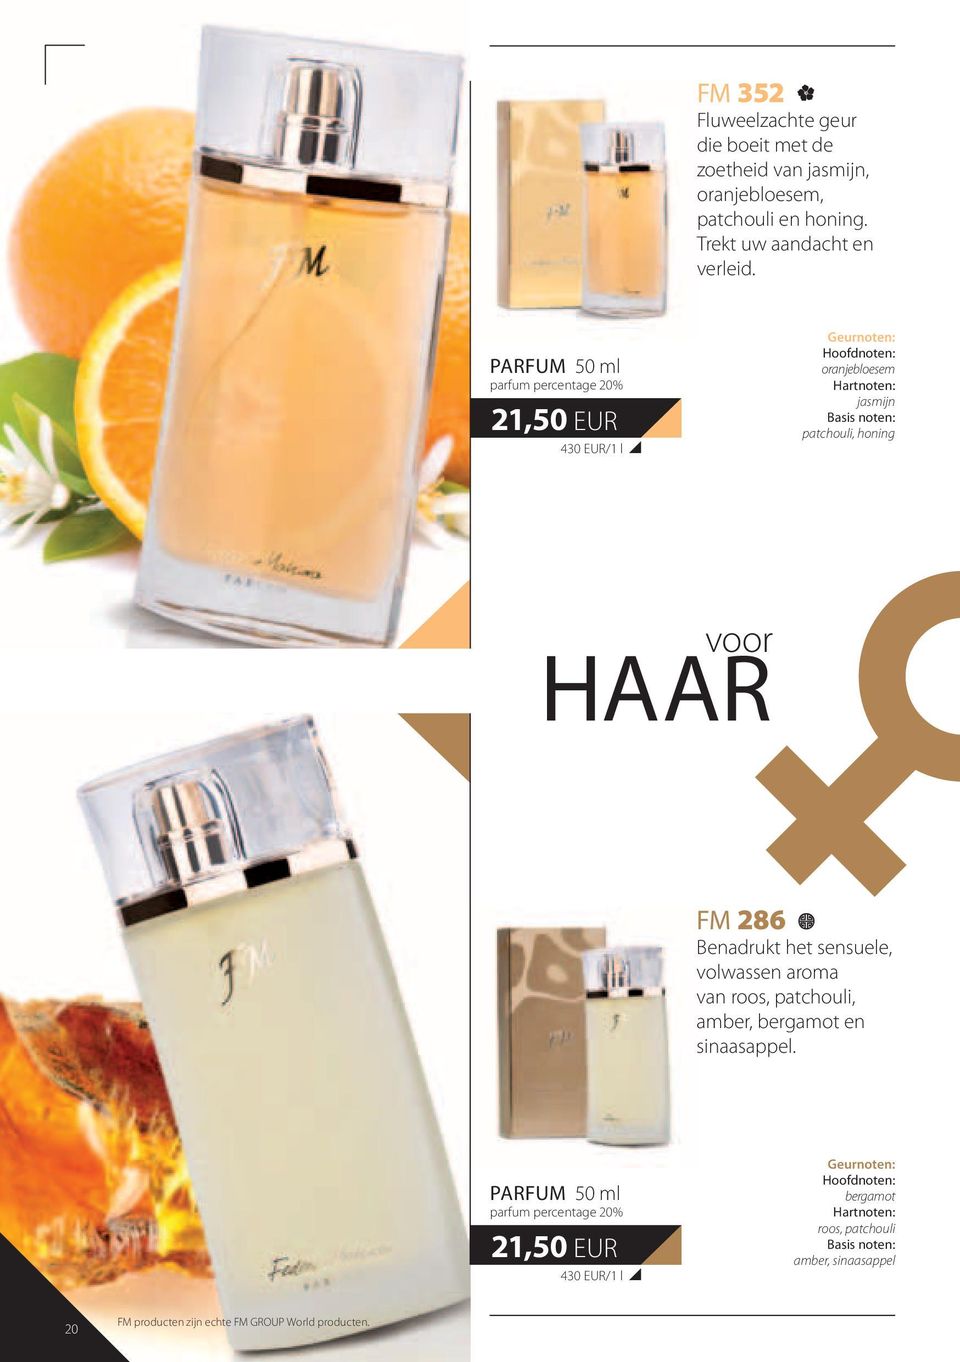 PARFUM 50 ml parfum percentage 20% 21,50 EUR 430 EUR/1 l oranjebloesem jasmijn patchouli, honing voor HAAR FM 286